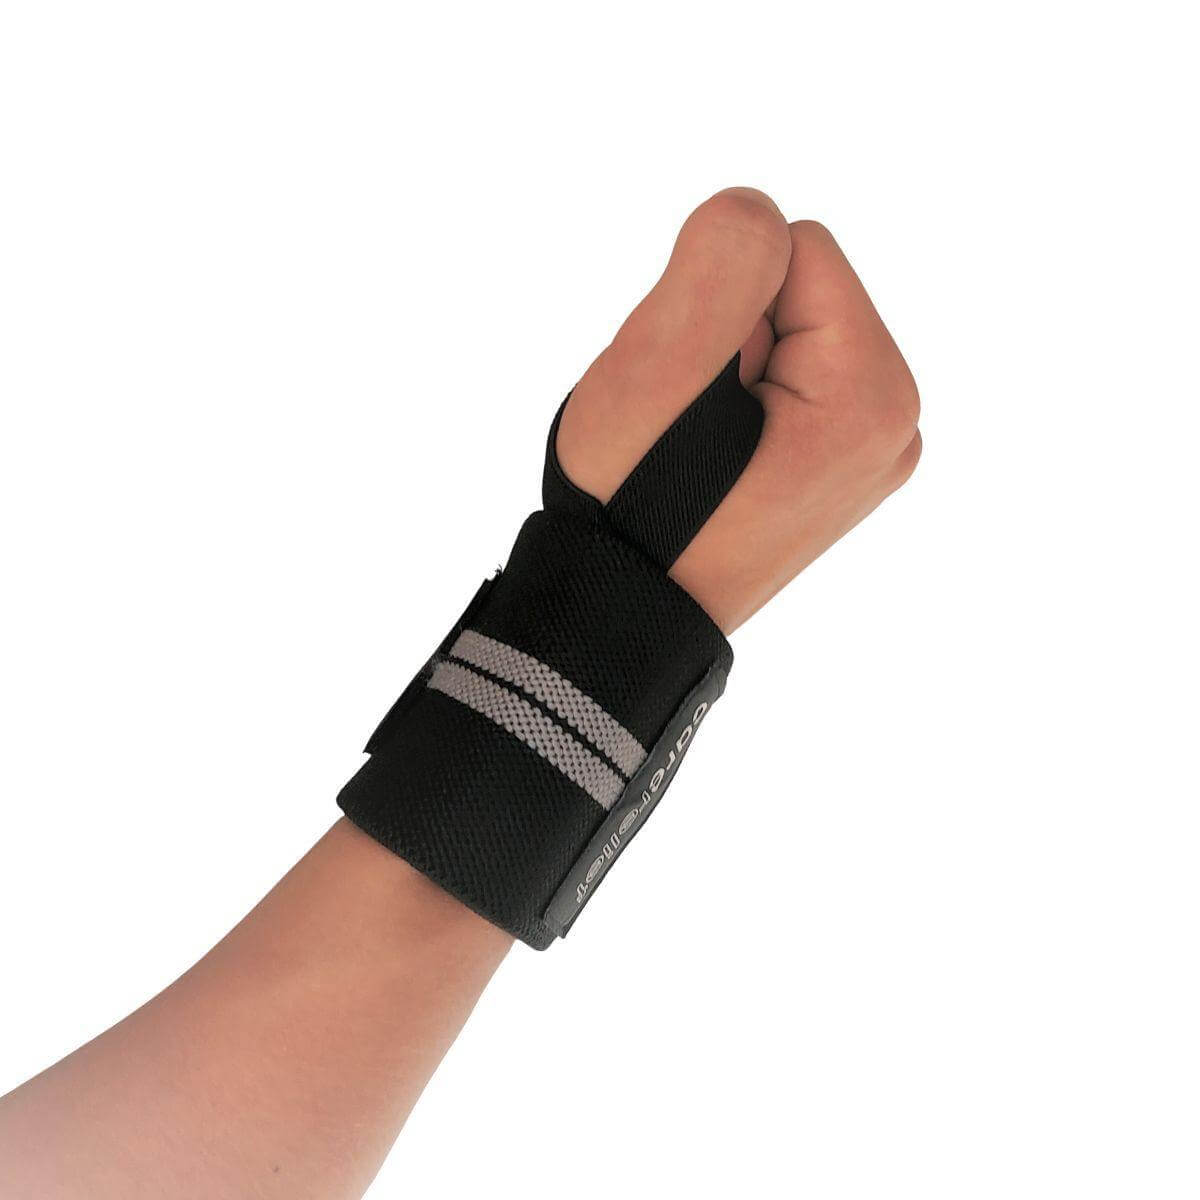 Wrist wraps sæt med støtte til håndleddene ved træning, 8 x 55 cm. Køb Carerelief håndledsbind HL30 med håndledsstøtte til styrketræning, vægtløftning, crossfit og fitness her!